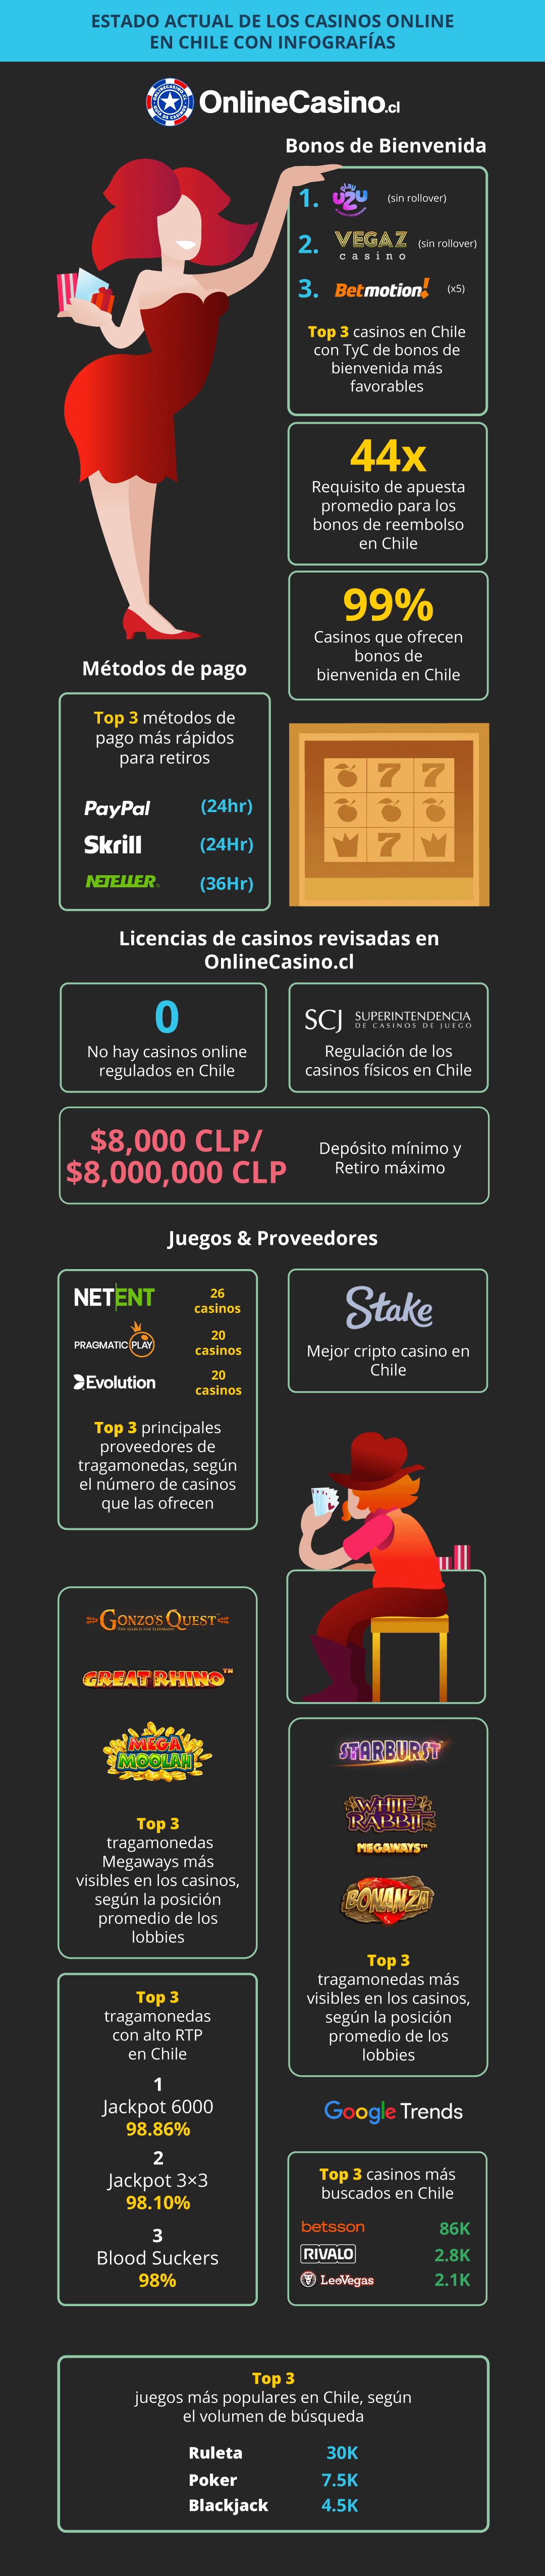 Imagen de la infografía del estado actual de los casinos online en Chile